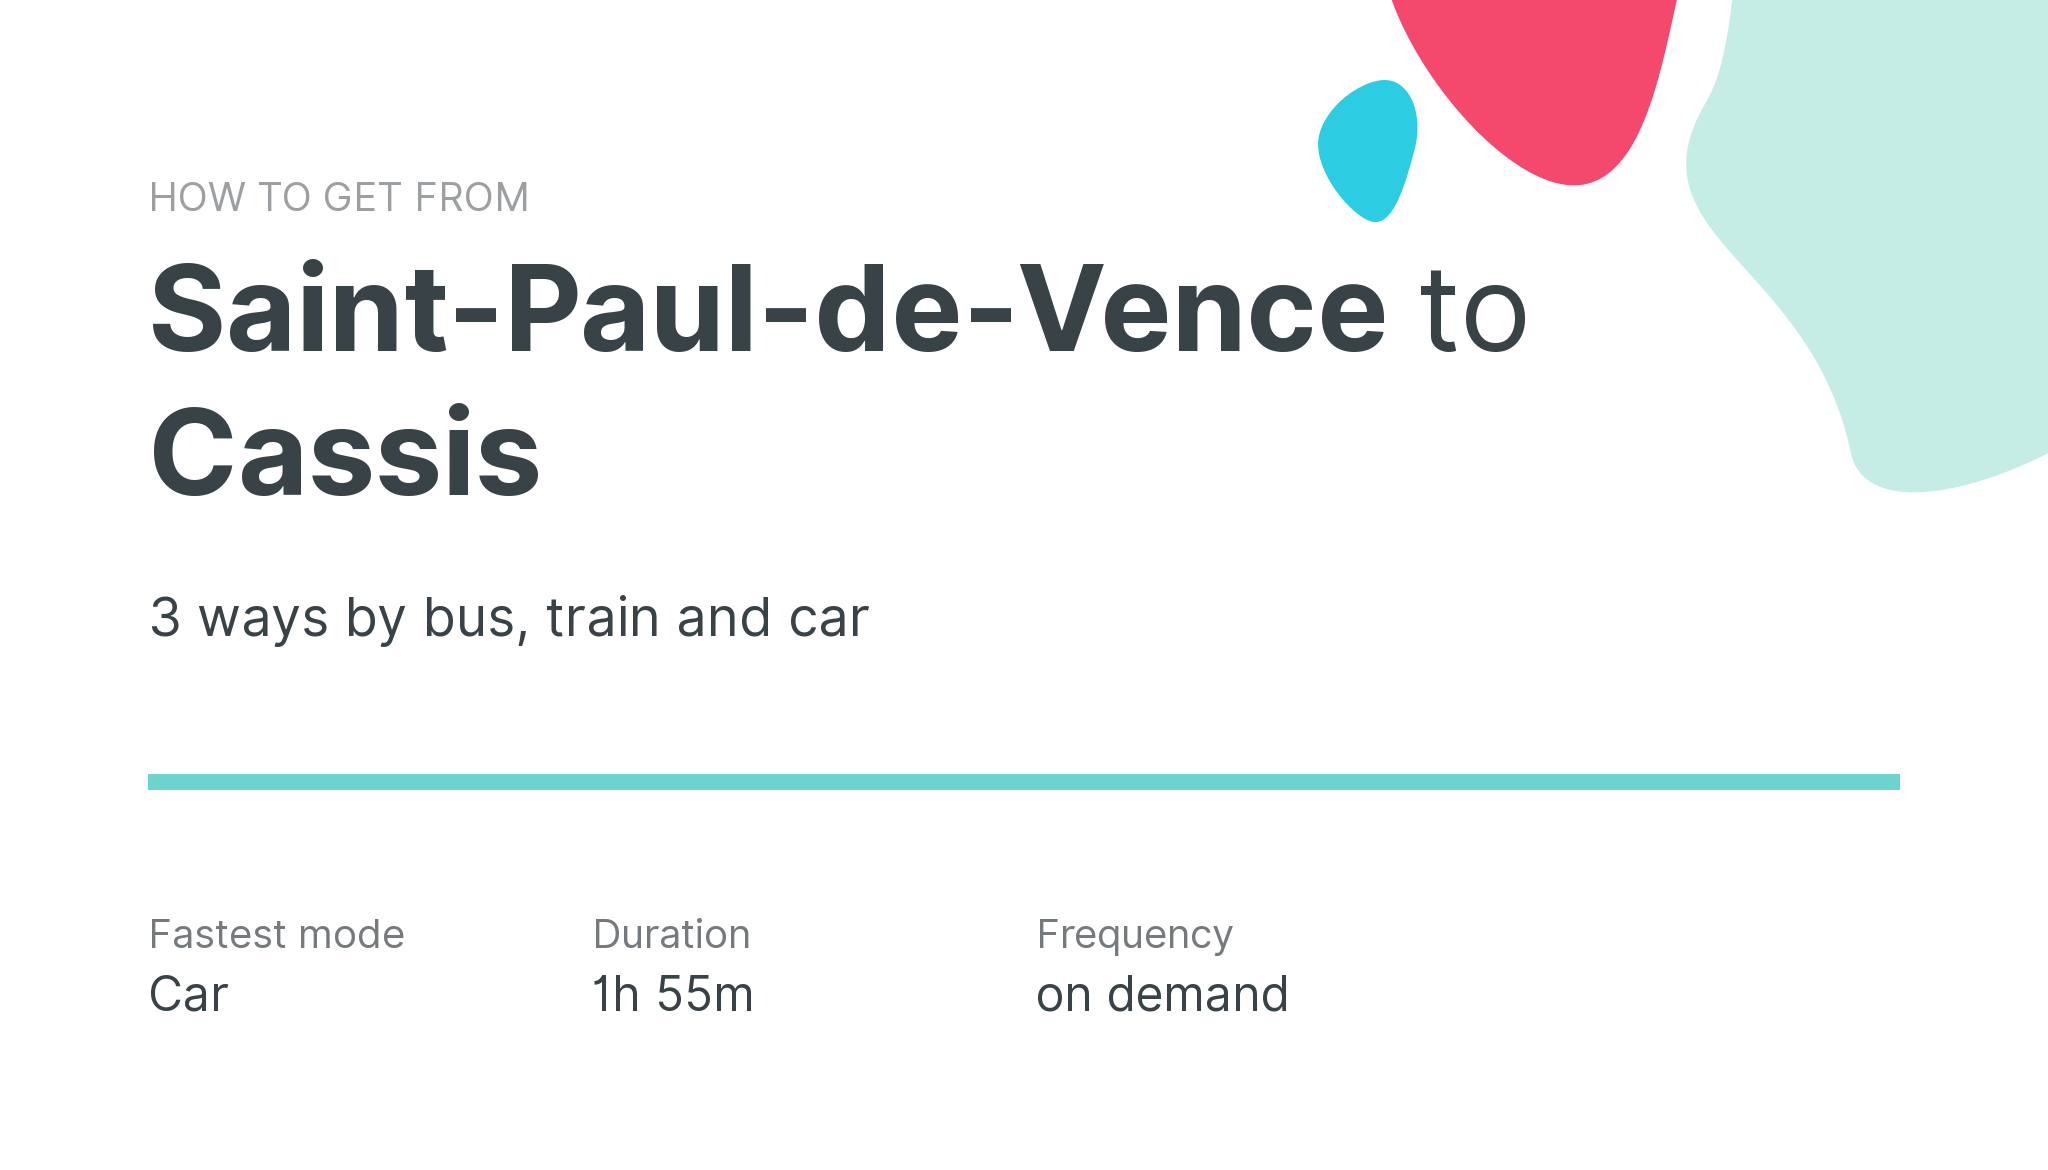 How do I get from Saint-Paul-de-Vence to Cassis